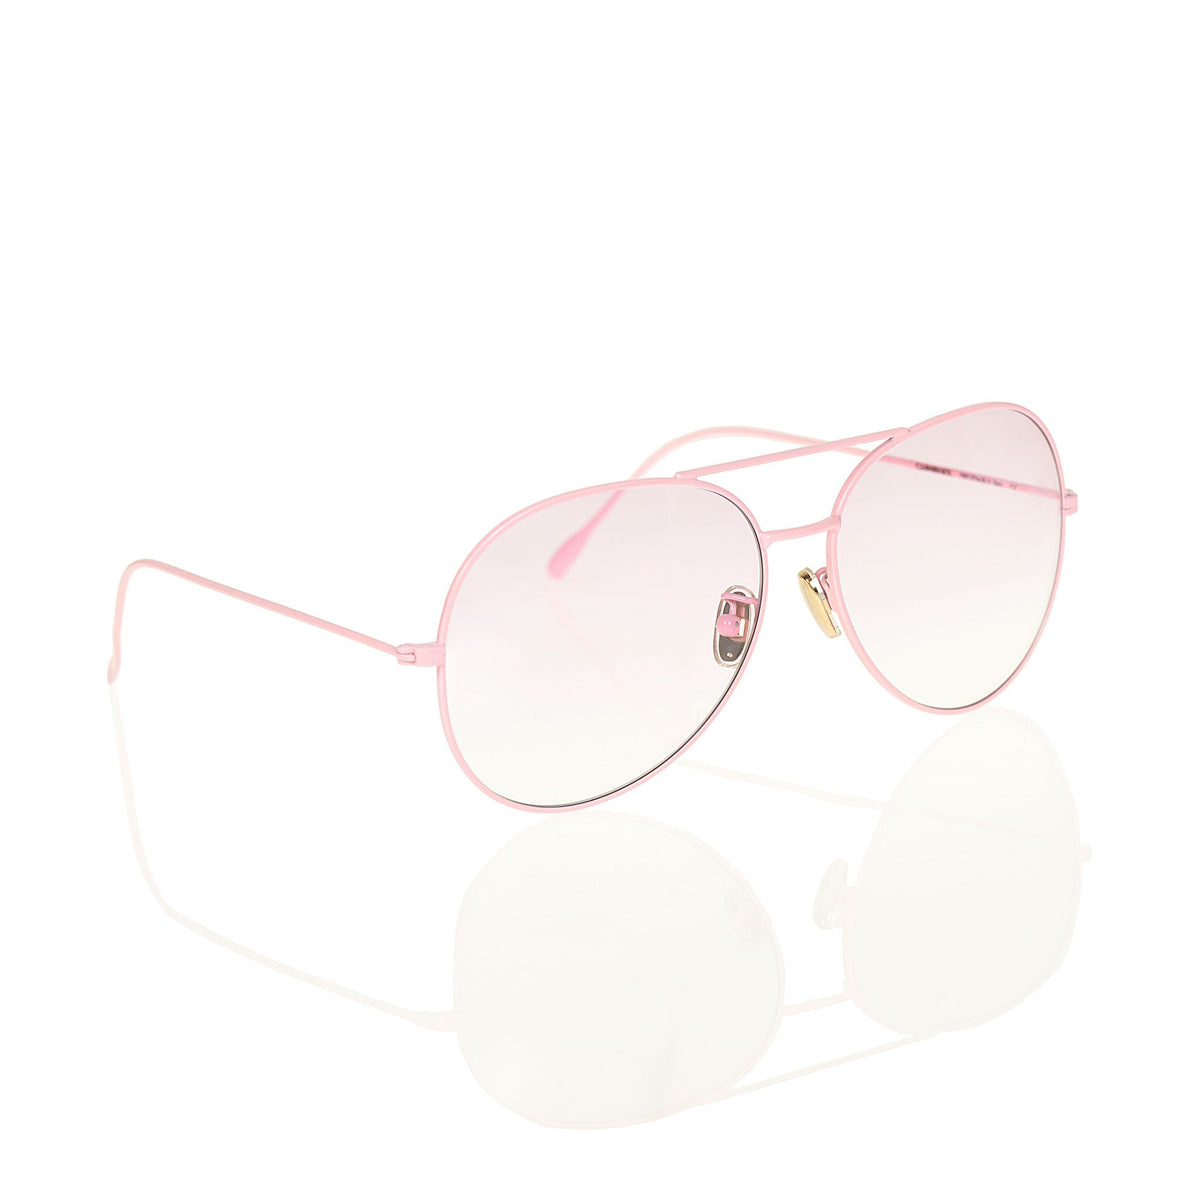 Baby pink aviators, sunglasses for women, womens sunglasses